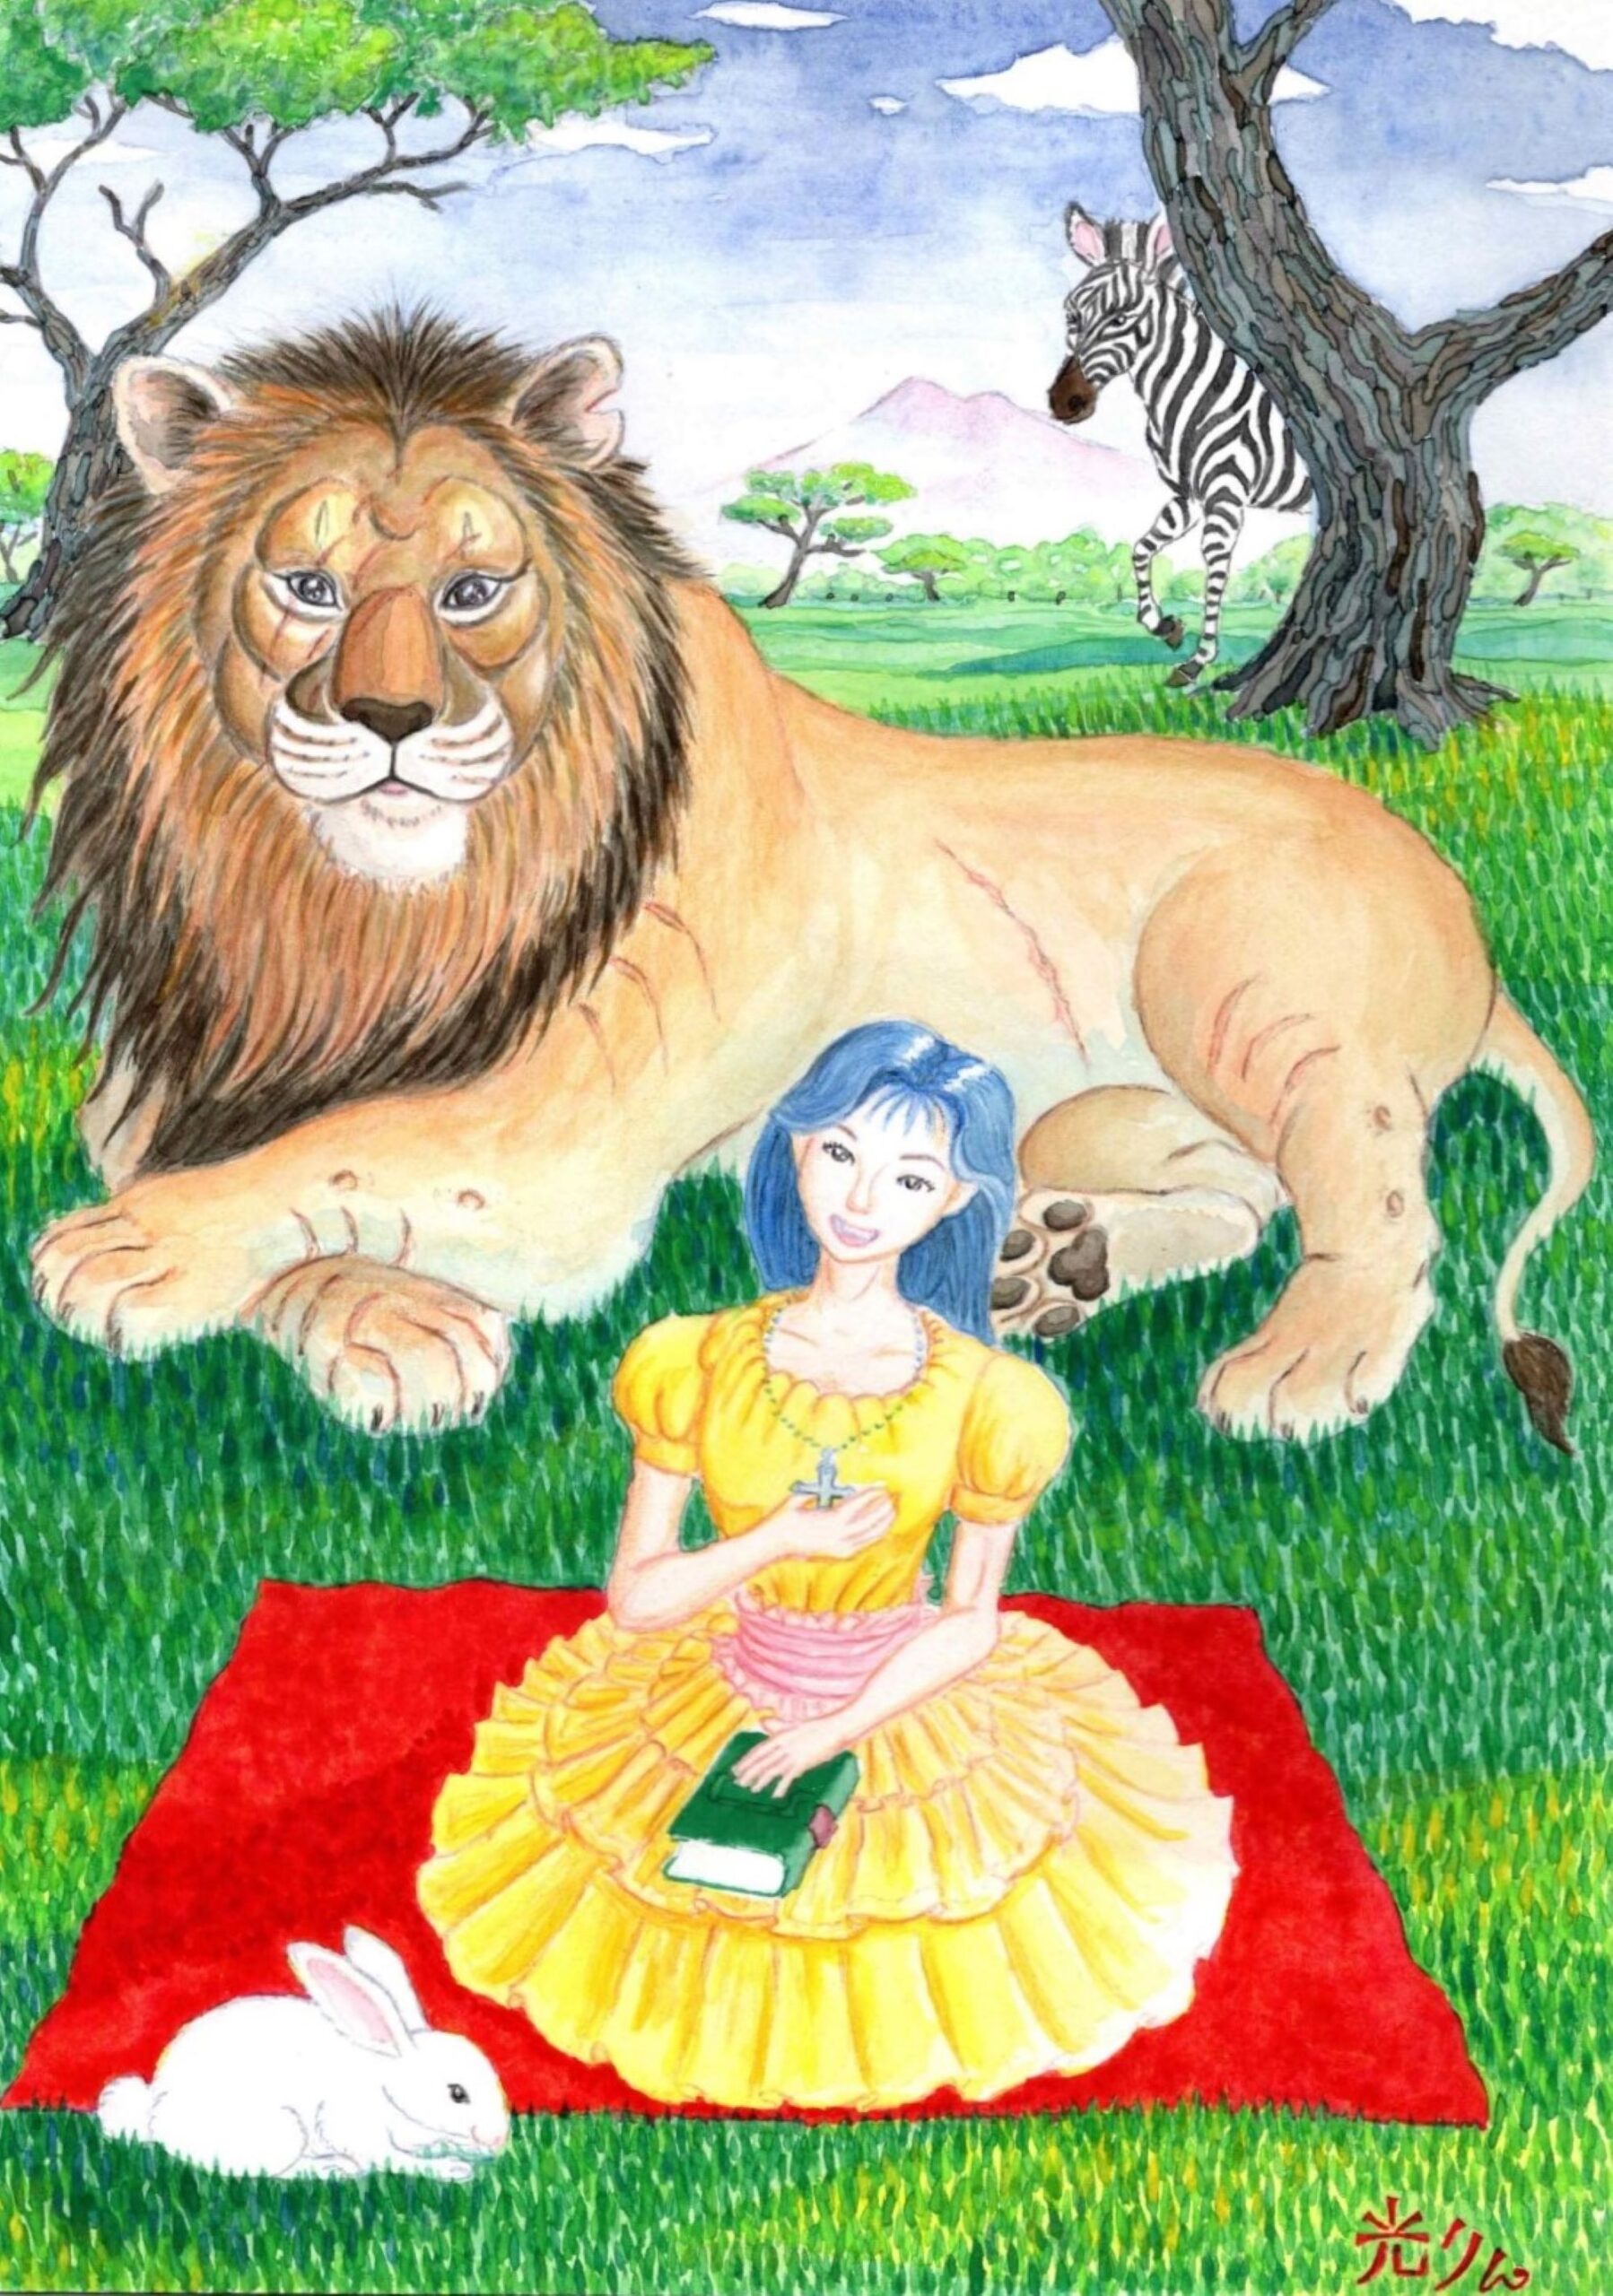 草原の上に赤いシートを広げ向日葵色のワンピースを着た少女が座っている。少女はネックレスの十字架に右手をあて、本の上に左手を置き口角を広げて微笑んでいる。少女の手前には白いウサギが横向きで座っている。少女の後ろに雄ライオンが穏やかな表情で正面を見つめて横たわっている。ライオンの右奥にシマウマが左向きに歩いている。一番奥に木々、山脈、青空がある。